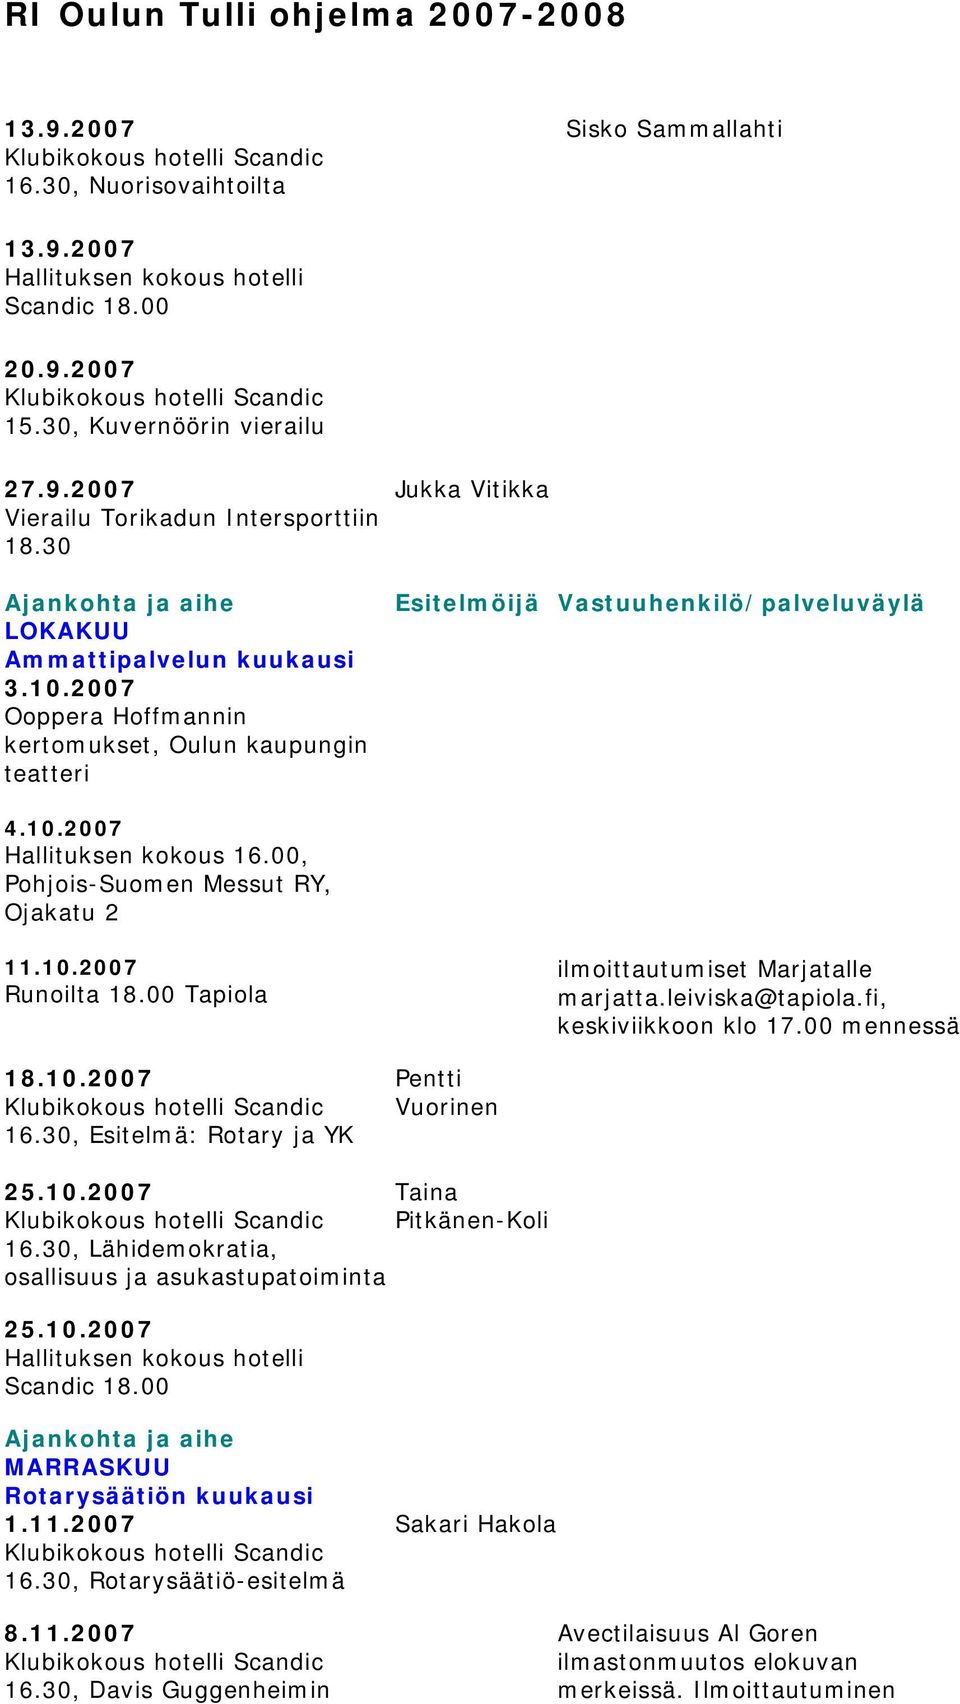 00 Tapiola ilmoittautumiset Marjatalle marjatta.leiviska@tapiola.fi, keskiviikkoon klo 17.00 mennessä 18.10.2007 16.30, Esitelmä: Rotary ja YK Pentti Vuorinen 25.10.2007 Taina Pitkänen-Koli 16.